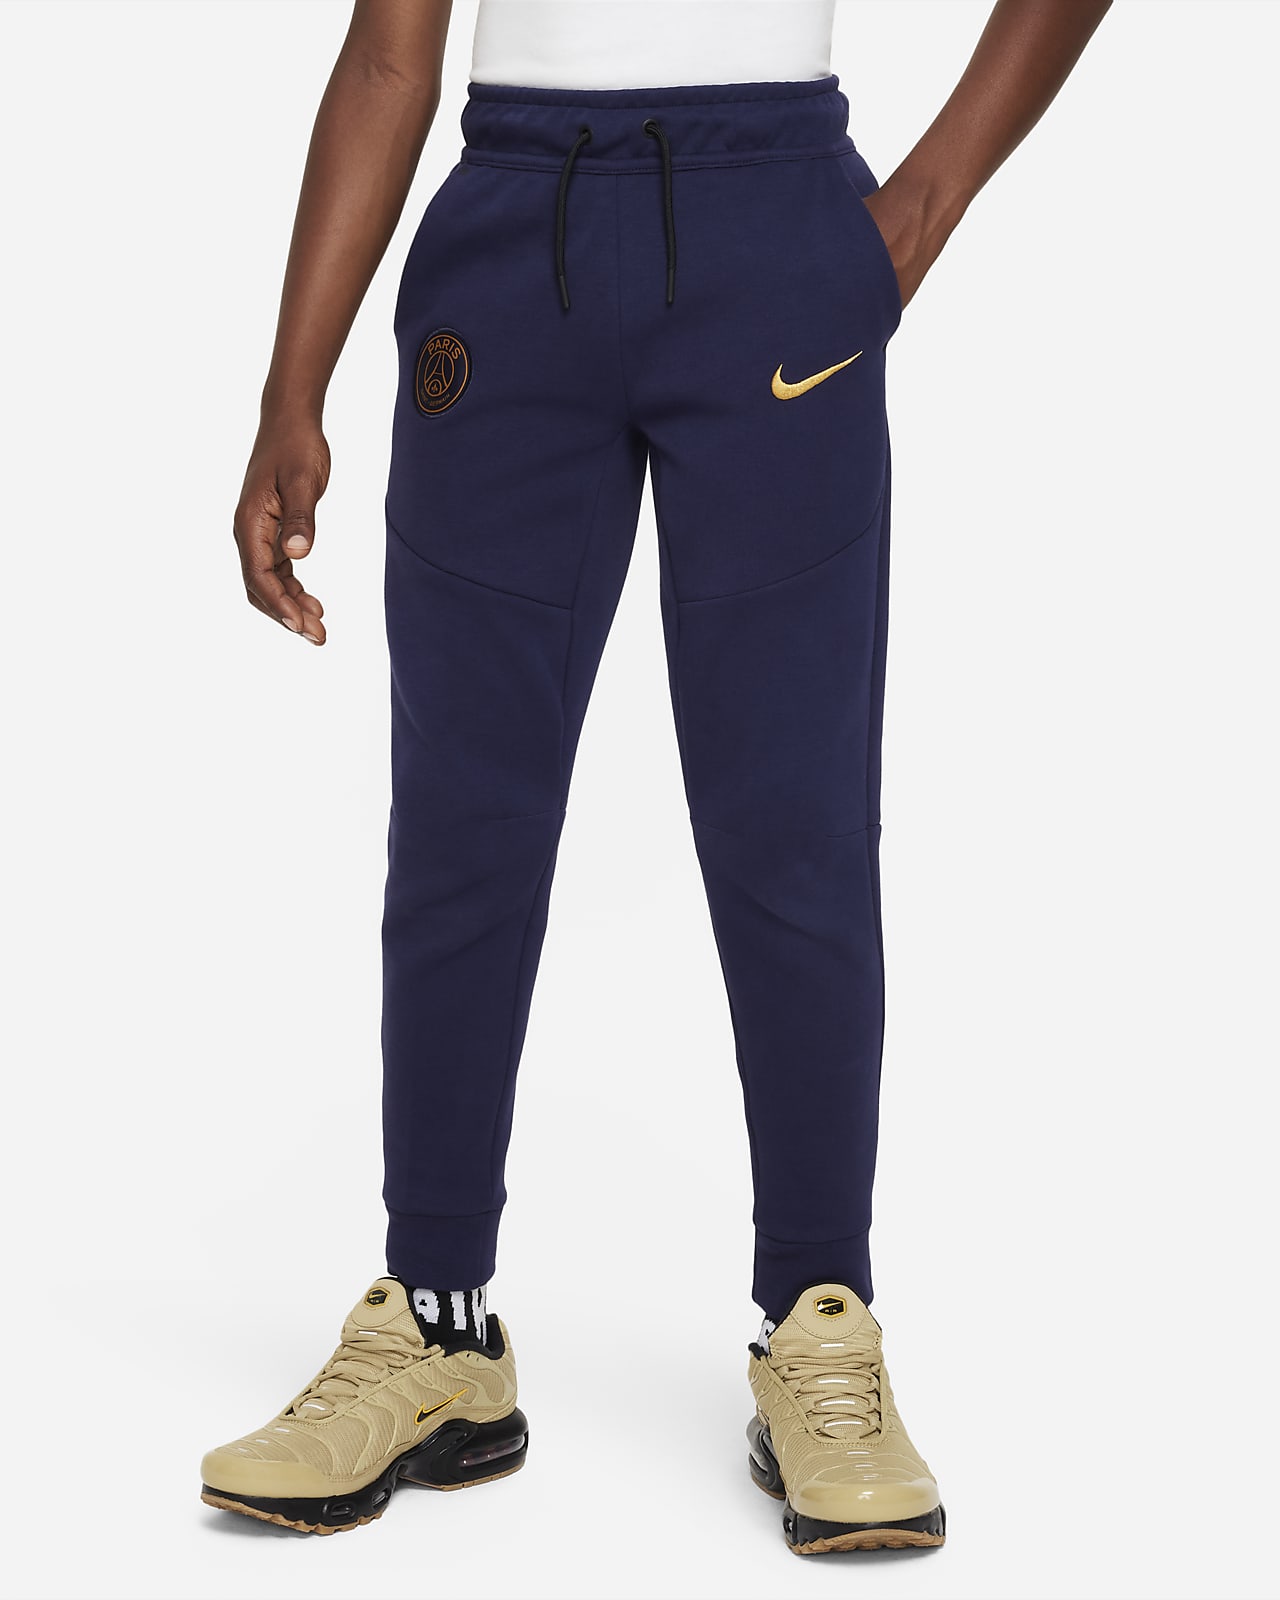 Ποδοσφαιρικό παντελόνι Nike Παρί Σεν Ζερμέν Tech Fleece για μεγάλα αγόρια